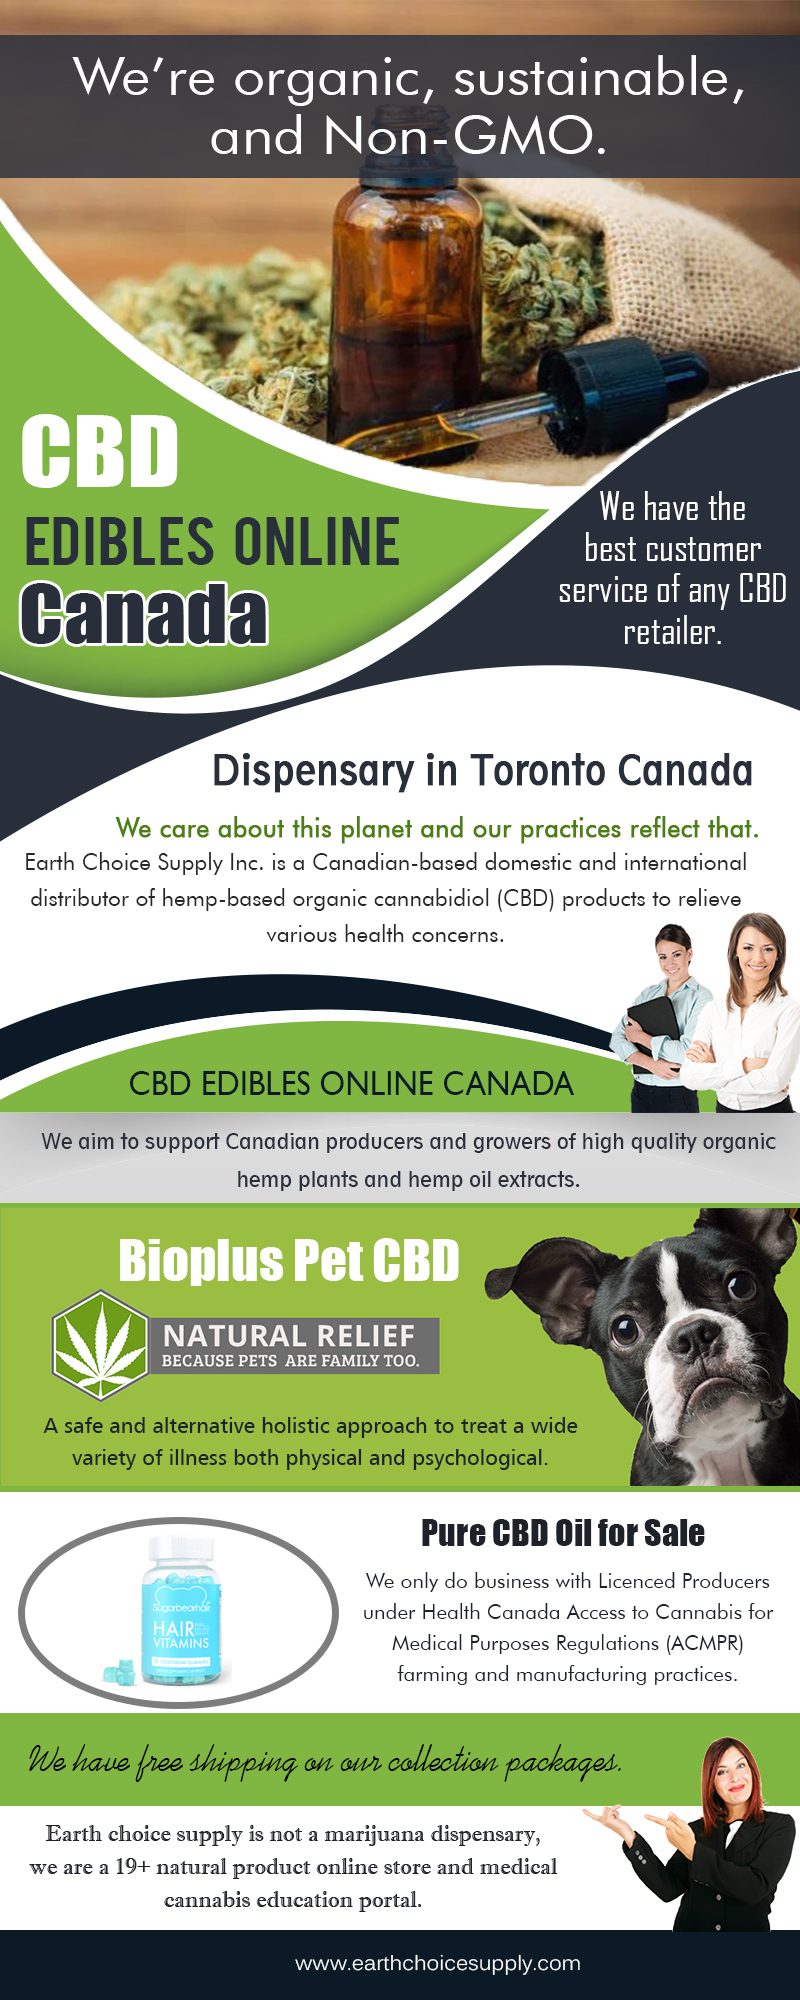 CBD Edible Online Canada | Call Us - 416-922-7238 | earthchoicesupply.com